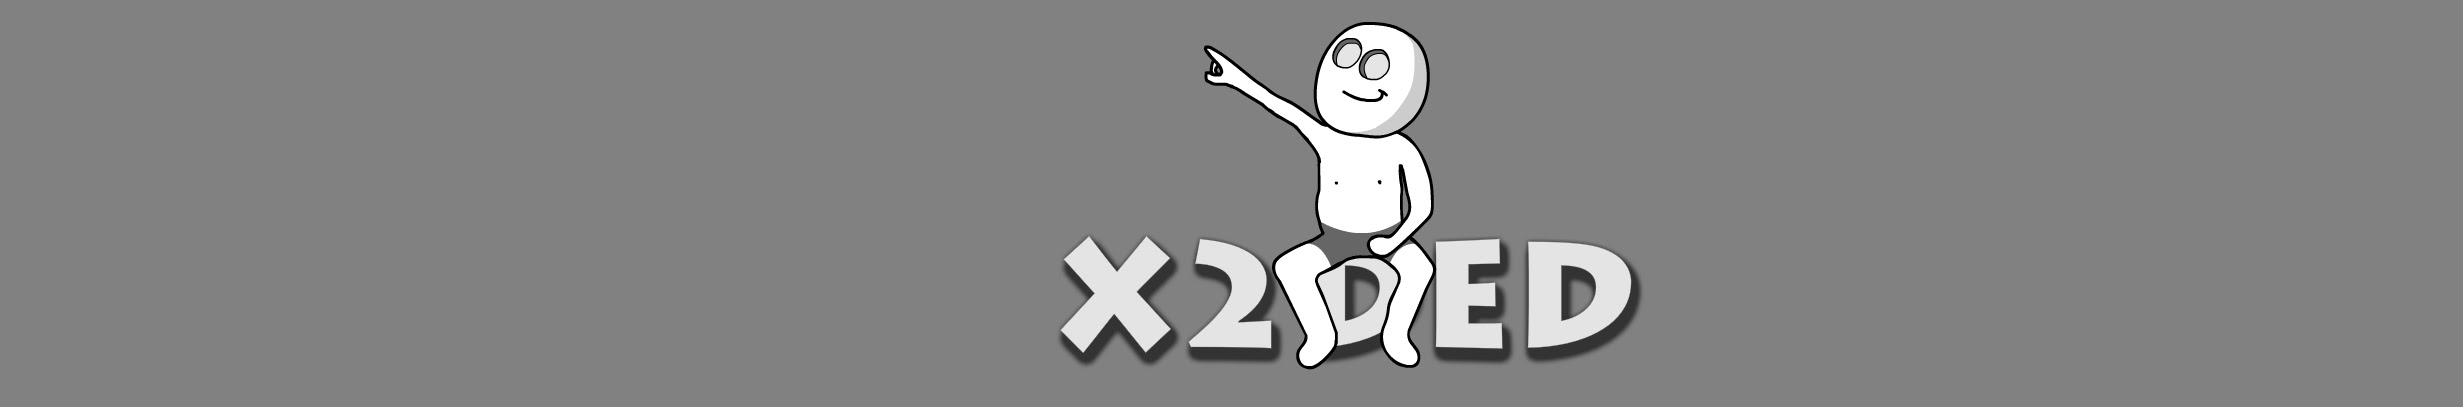 X2ded анимации. Канал x2ded. X2ded ЮТУБЕР. X2ded картинки. X2ded канал 2*2.